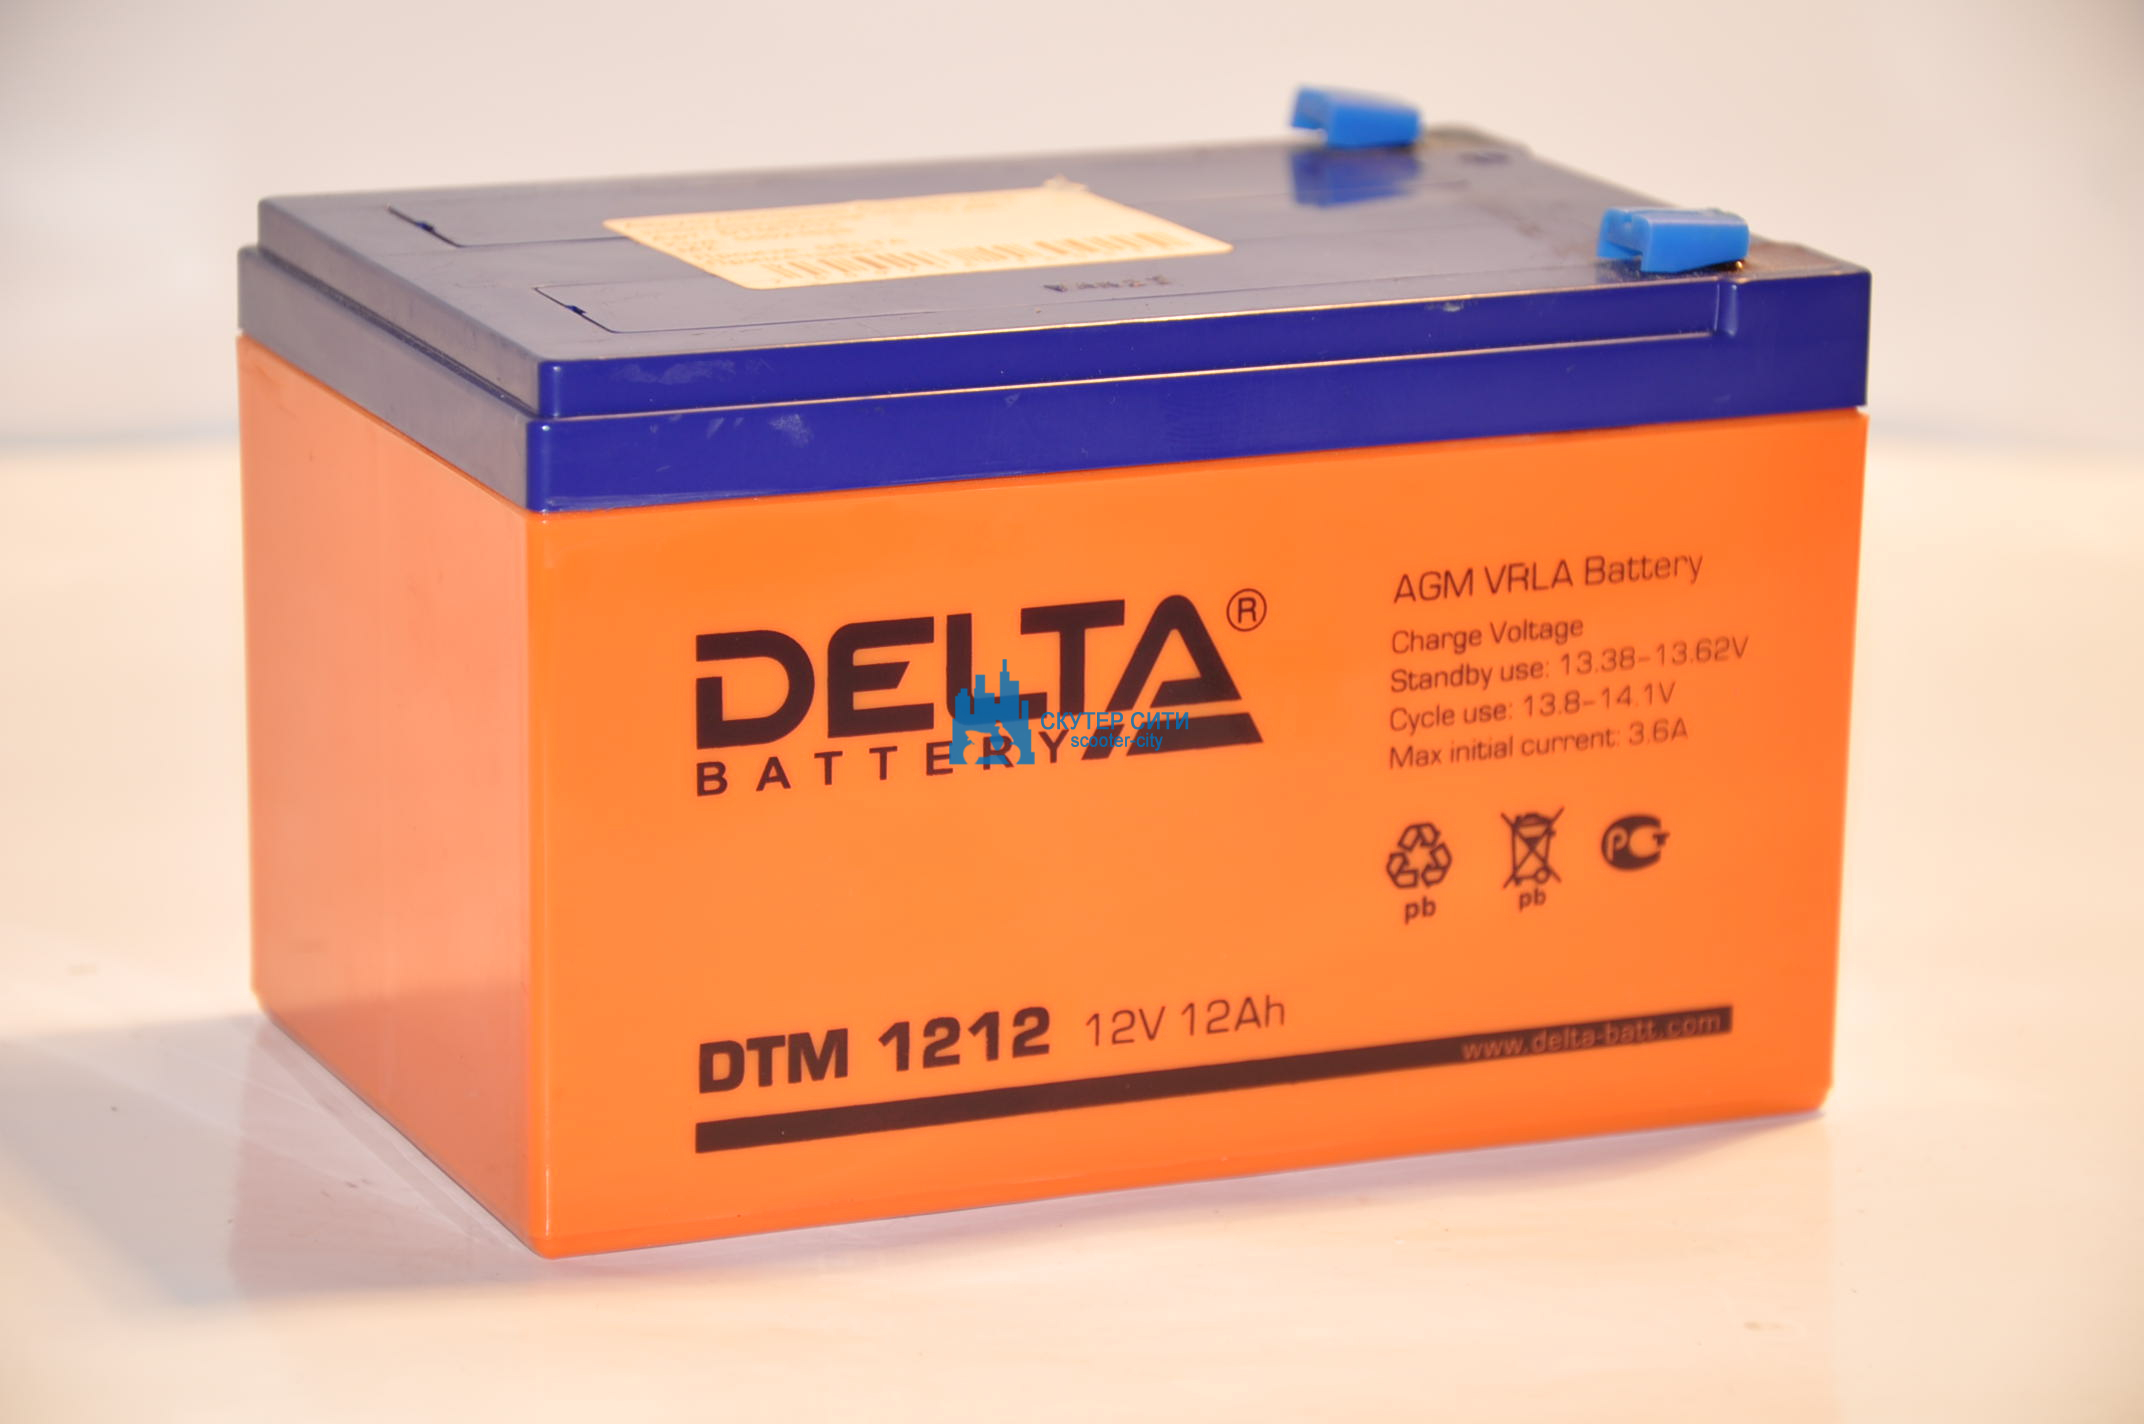 Аккумулятор Дельта 12v 12ah. Аккумулятор Delta DTM 1212 12v 12ah. Аккумулятор Delta dtm1212 12v 12ah (151*98*101mm). Аккум.Delta DTM 1212 12v 12ah 23603. Аккумулятор для электромобиля 12v